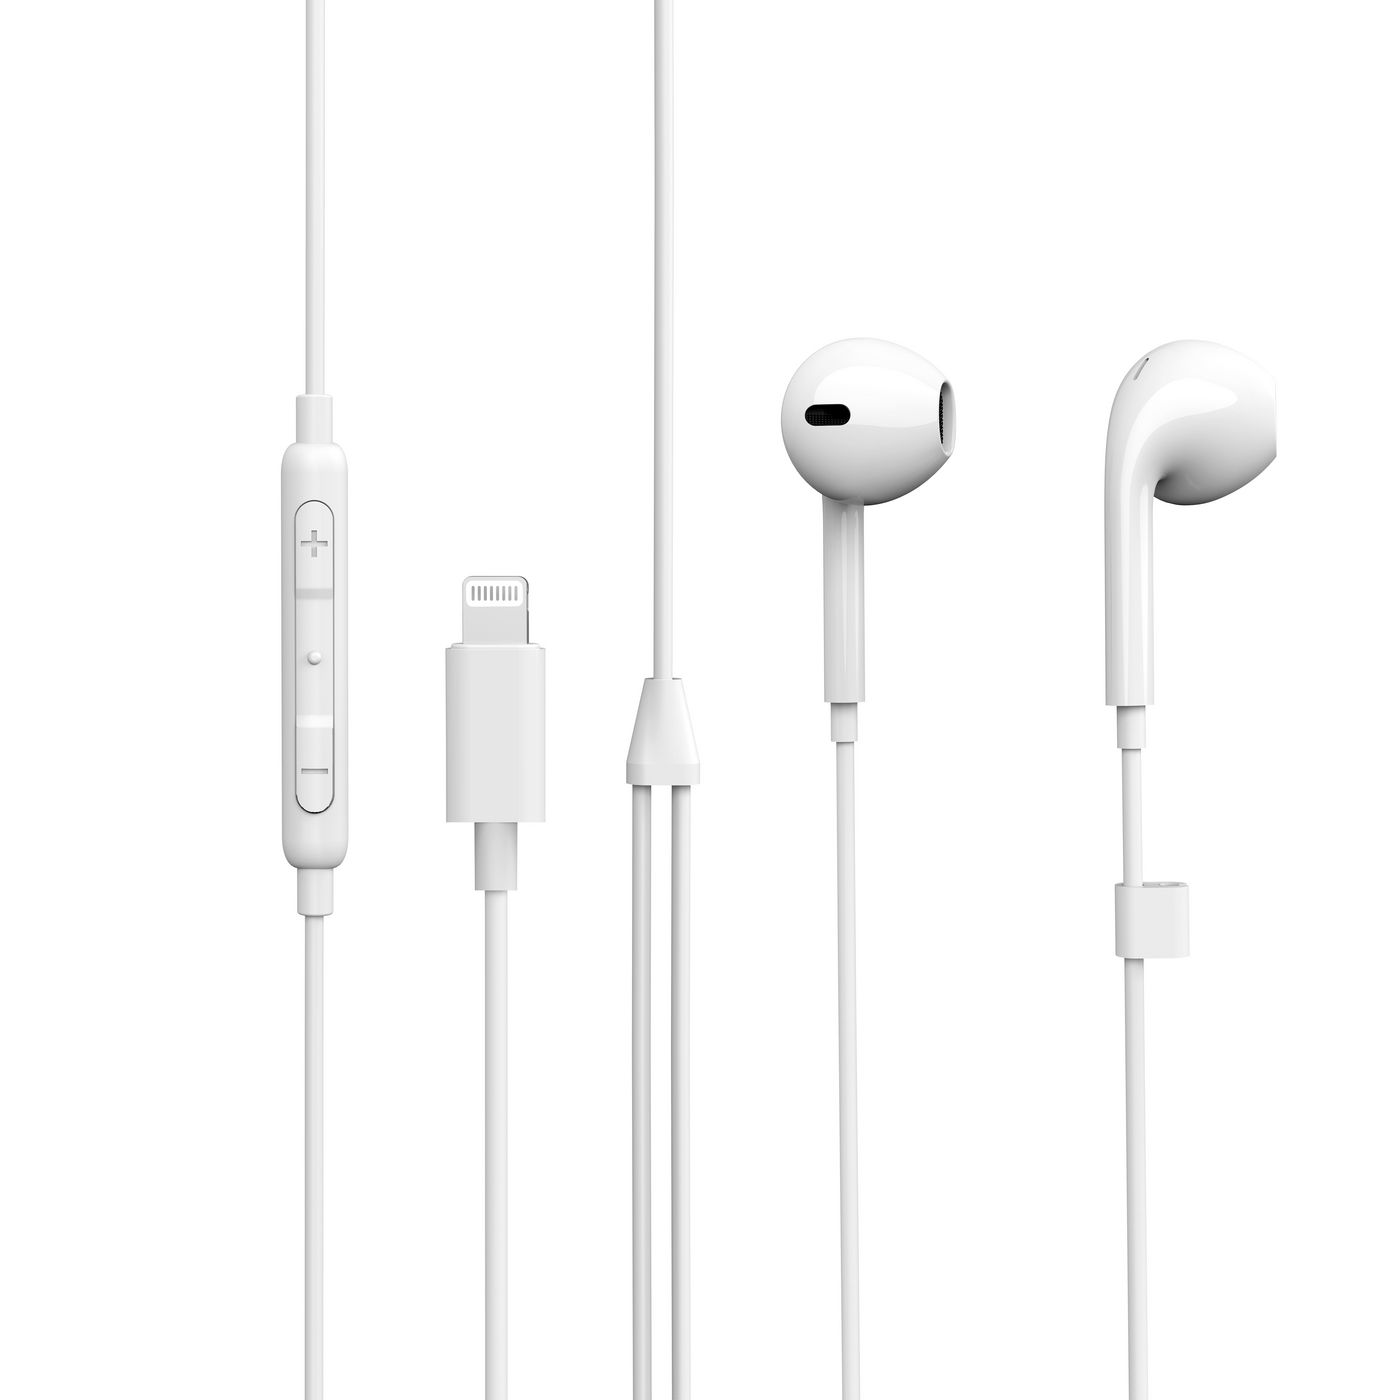 Apple EarPods avec connecteur Lightning : : Électronique